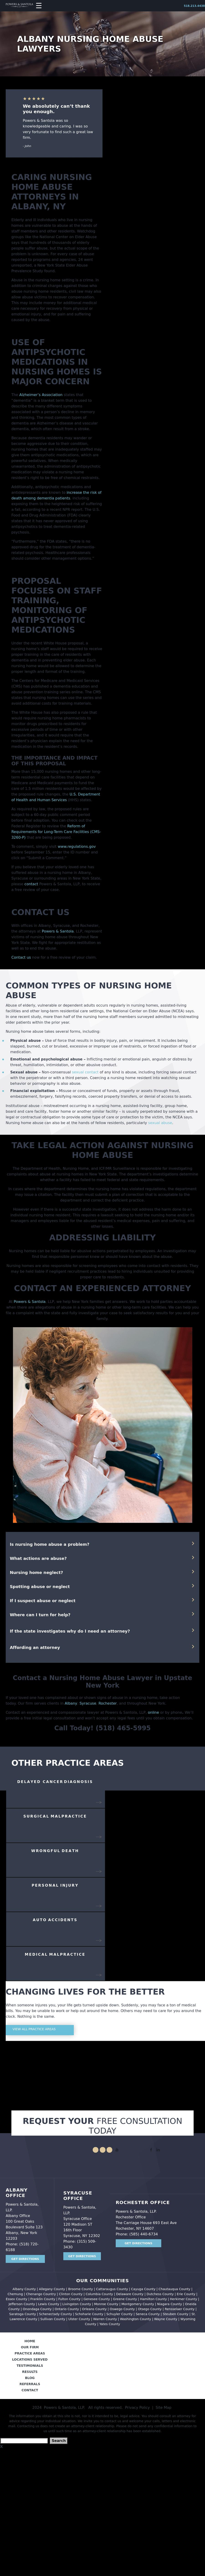 Powers & Santola, LLP - Albany NY Lawyers